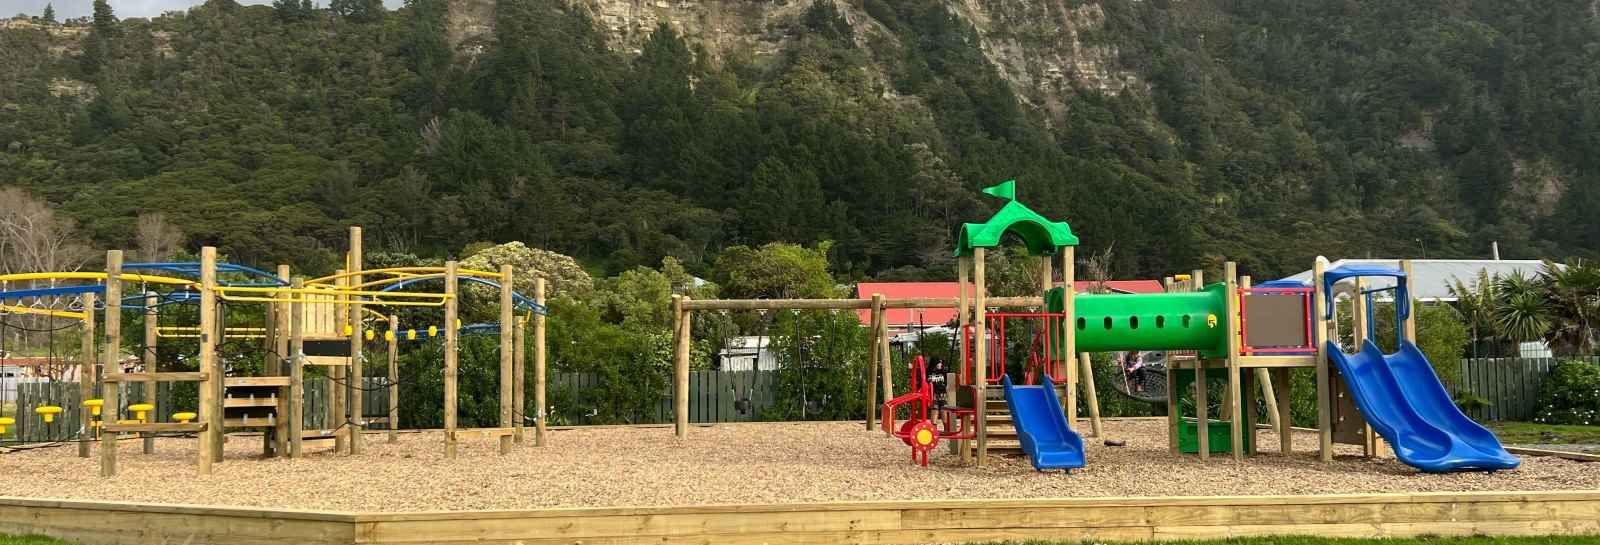 Te Araroa playground banner image